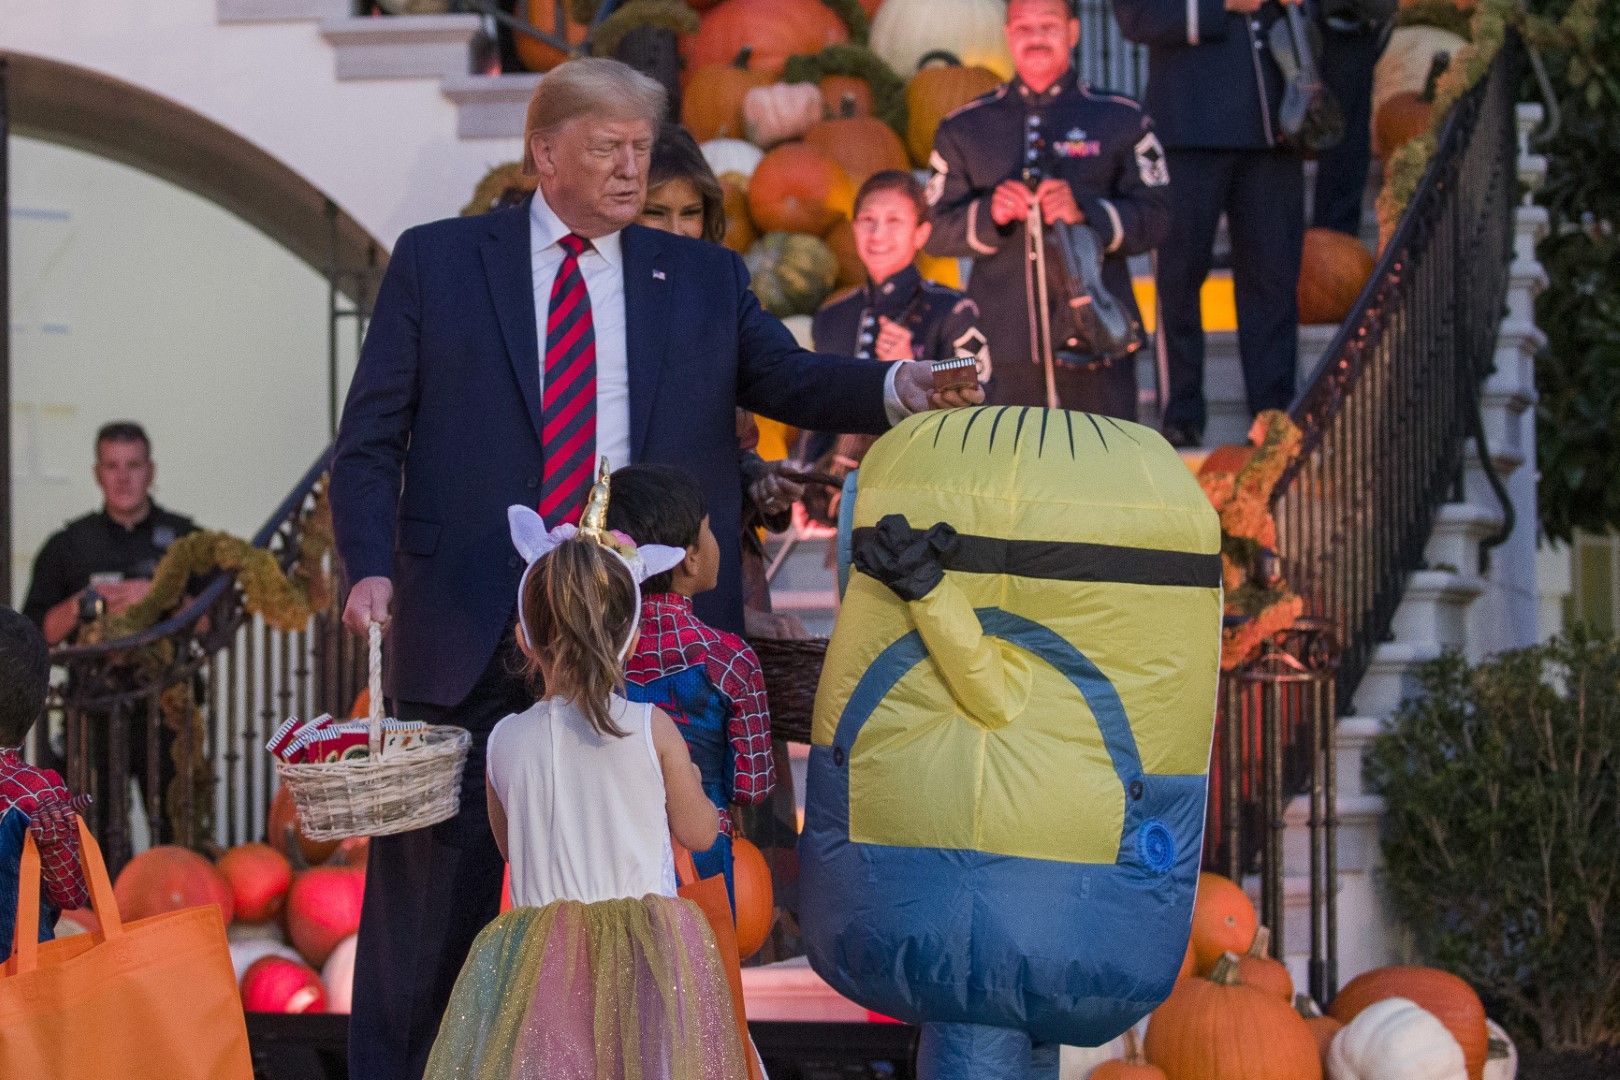 През това време Доналд Тръмп и първата дама Мелания се веселят с децата за празника Хелоуин